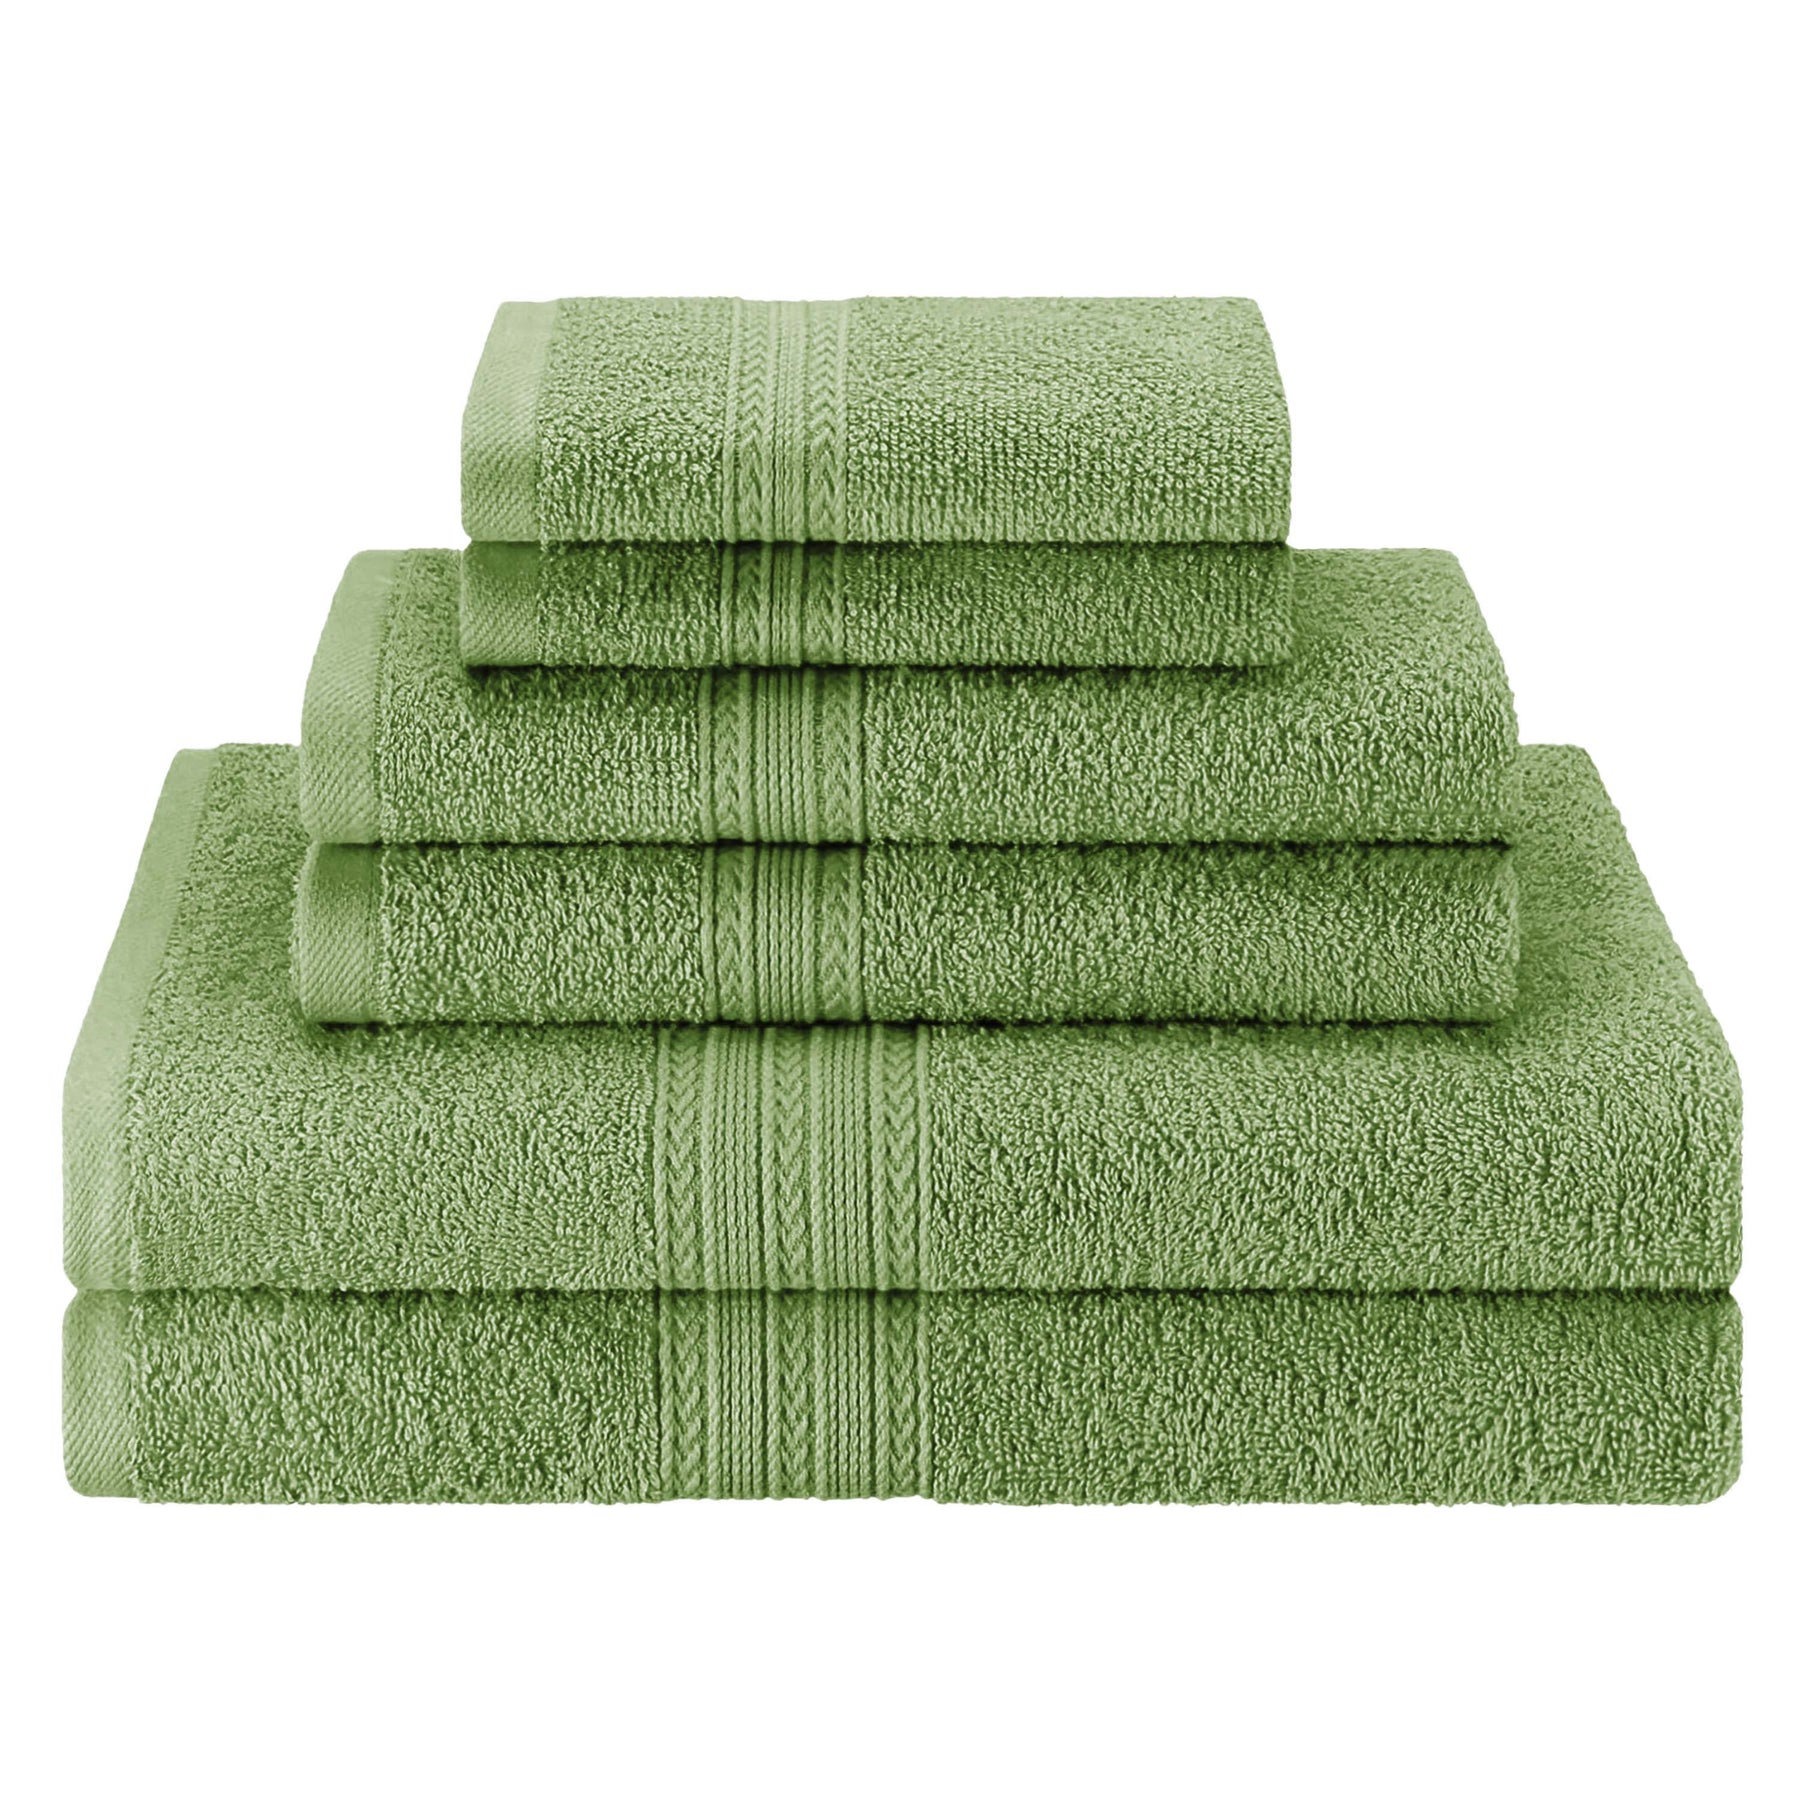 Eco-Friendly Ring Spun Cotton Towel Set - Terrace Green